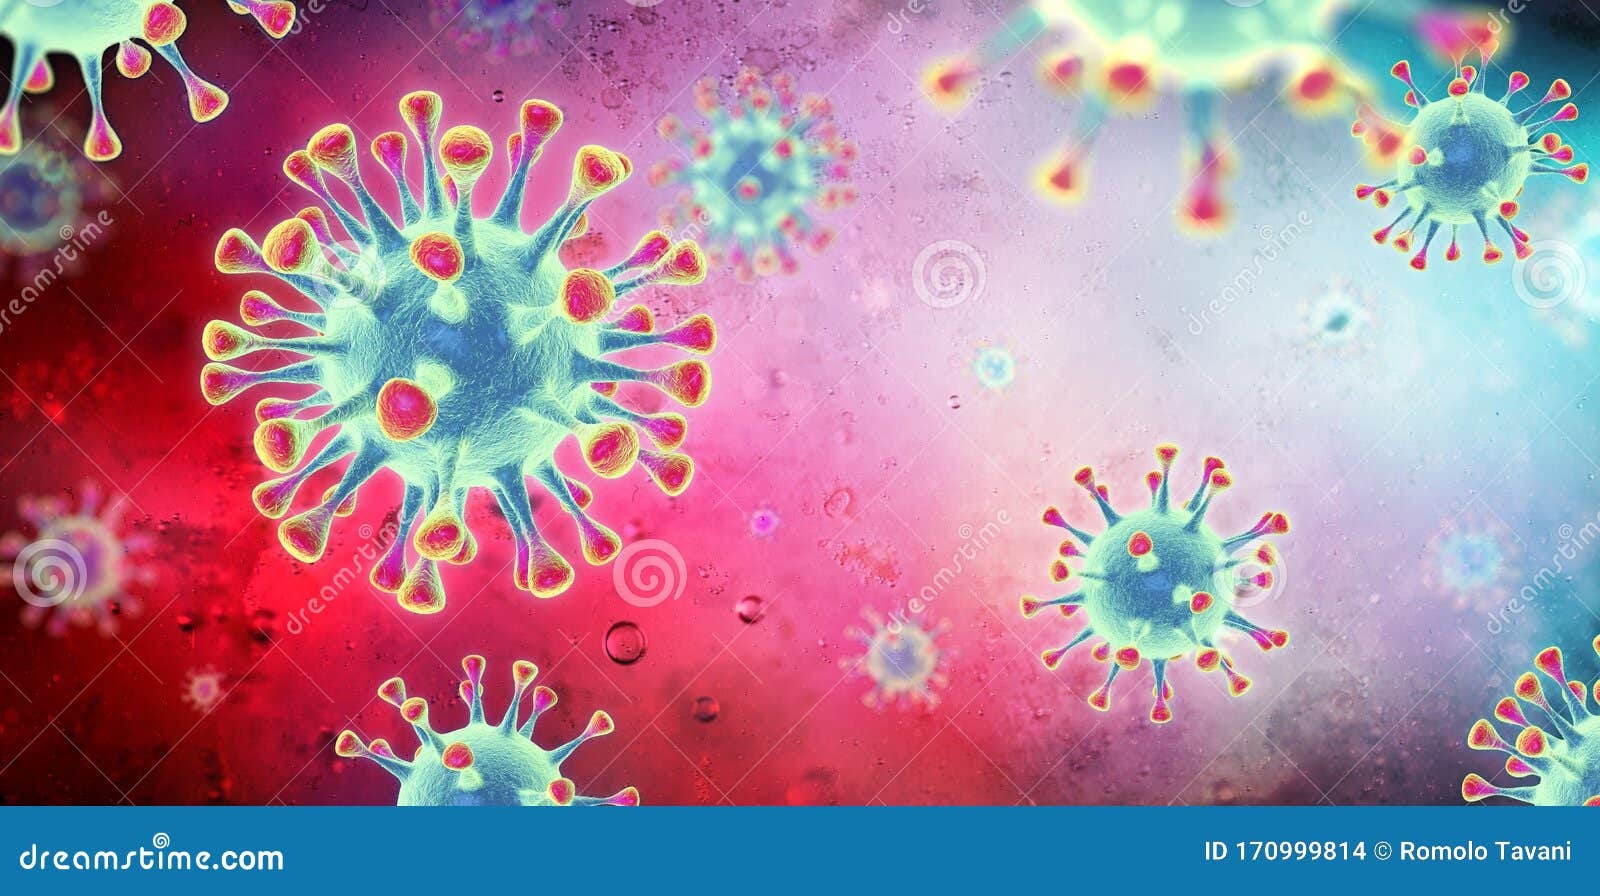 corona virus microbiology 3d-rendering